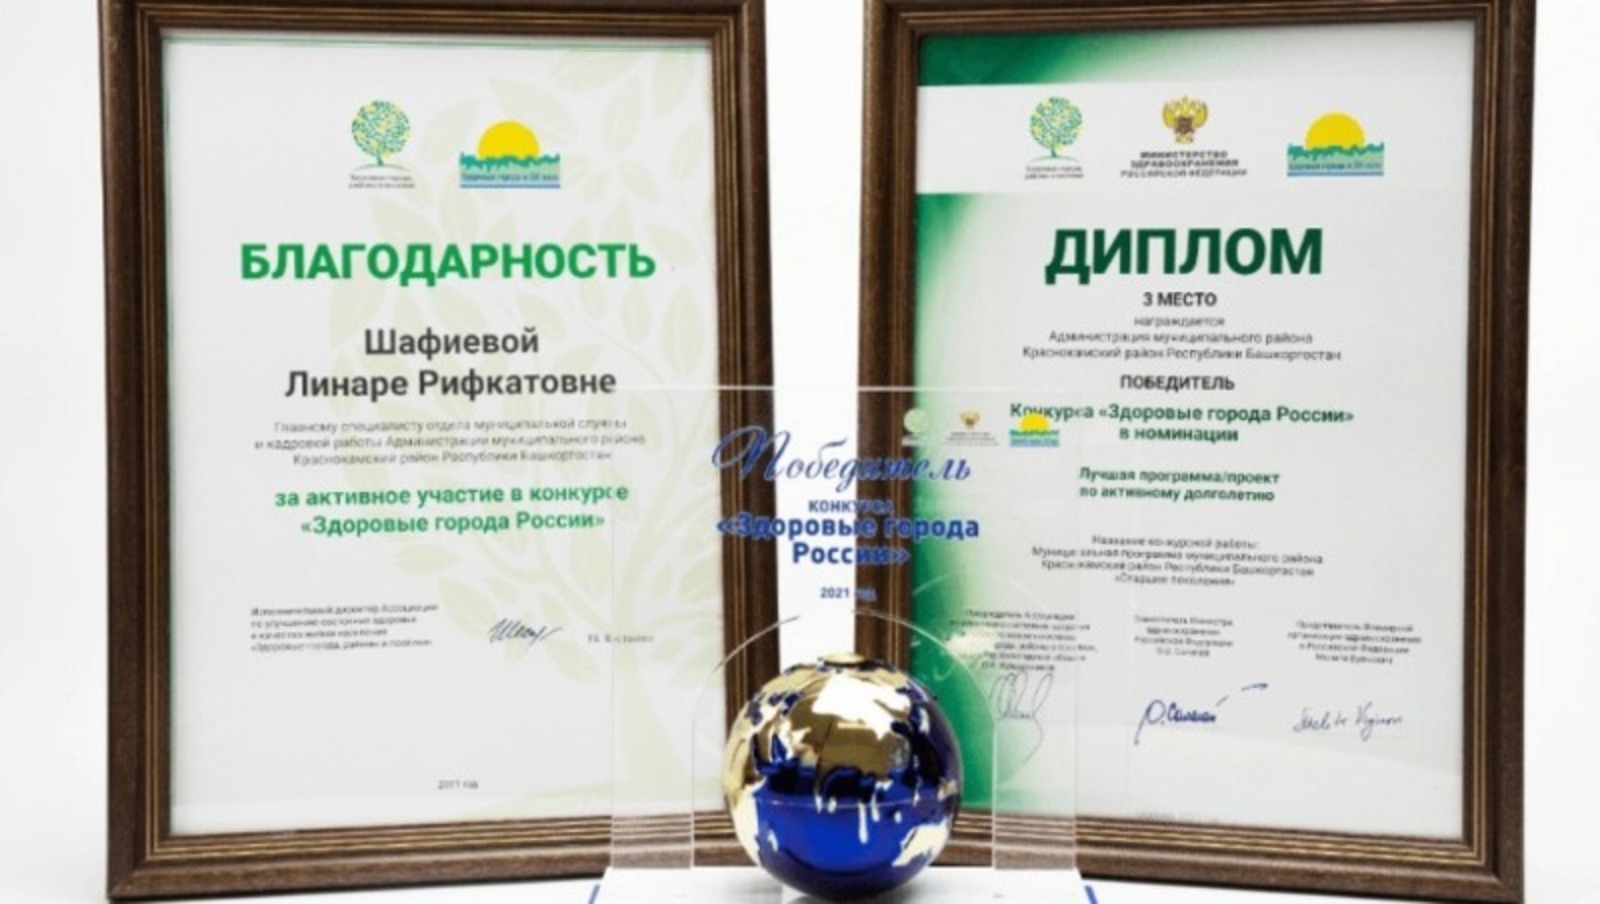 Администрация Благоварского района стала призером в конкурсе "Здоровые города России"